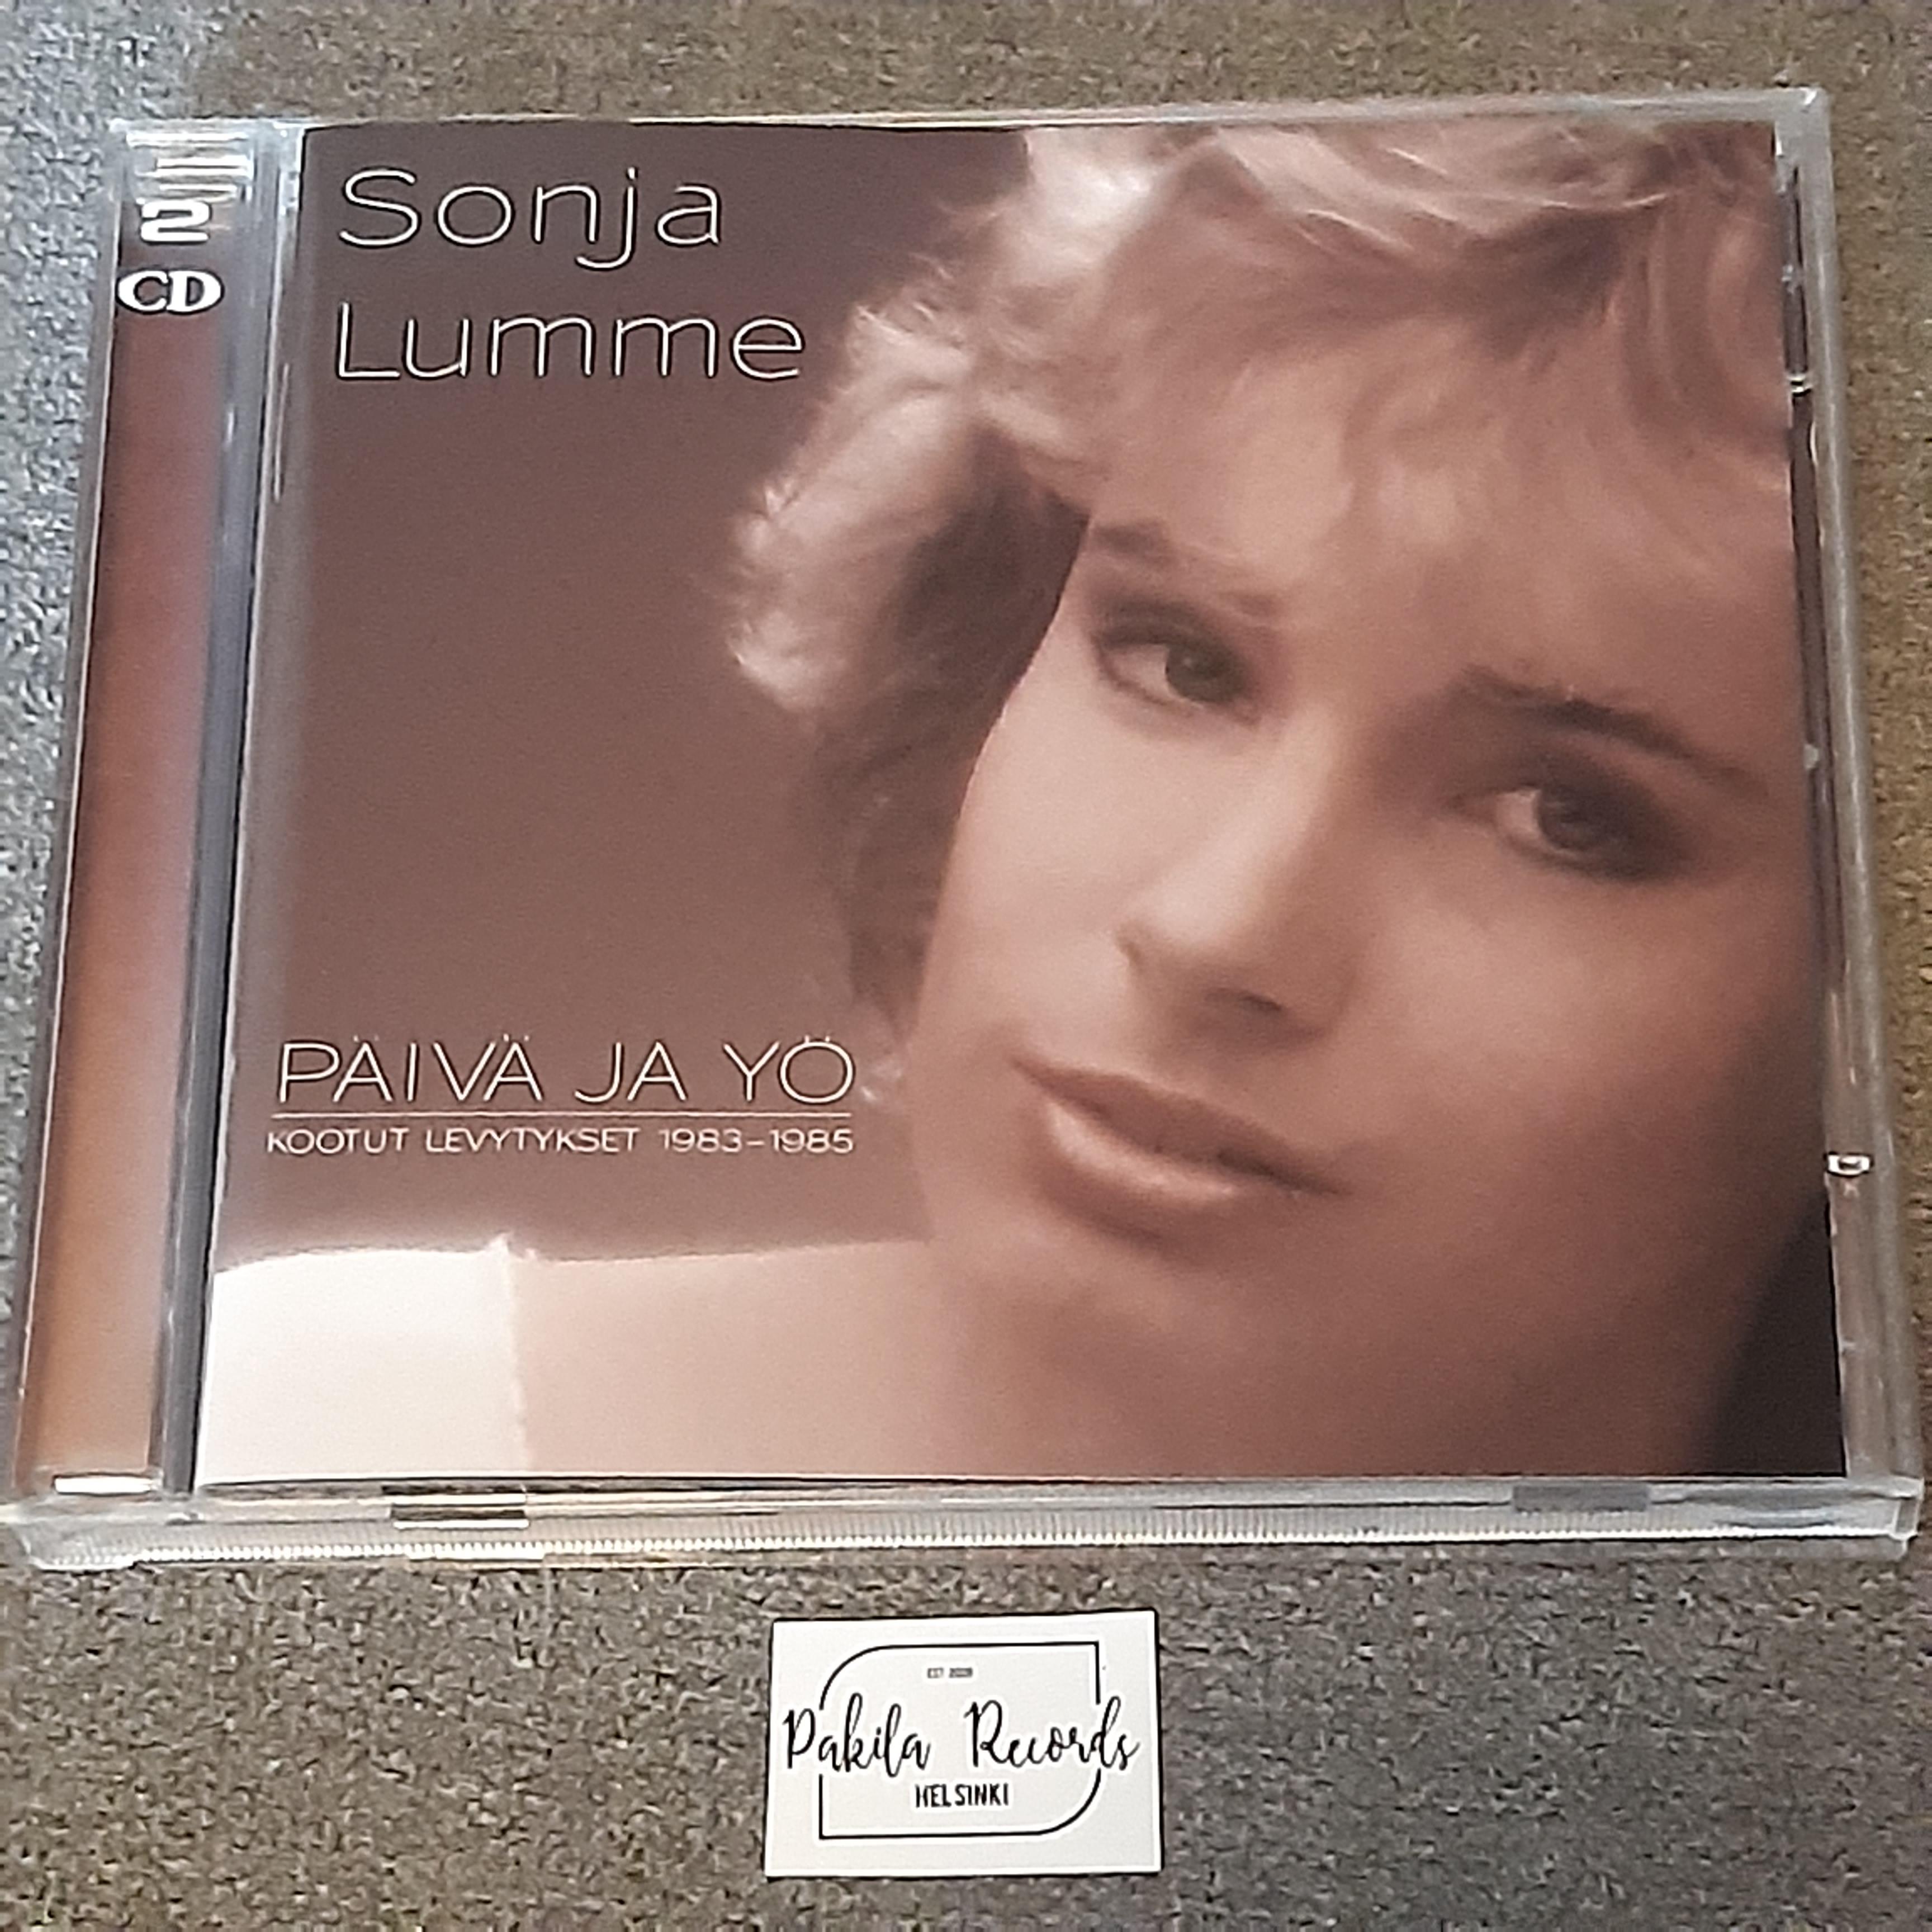 Sonja Lumme - Päivä ja Yö, Kootut levytykset 1983-1985 - 2 CD (käytetty)